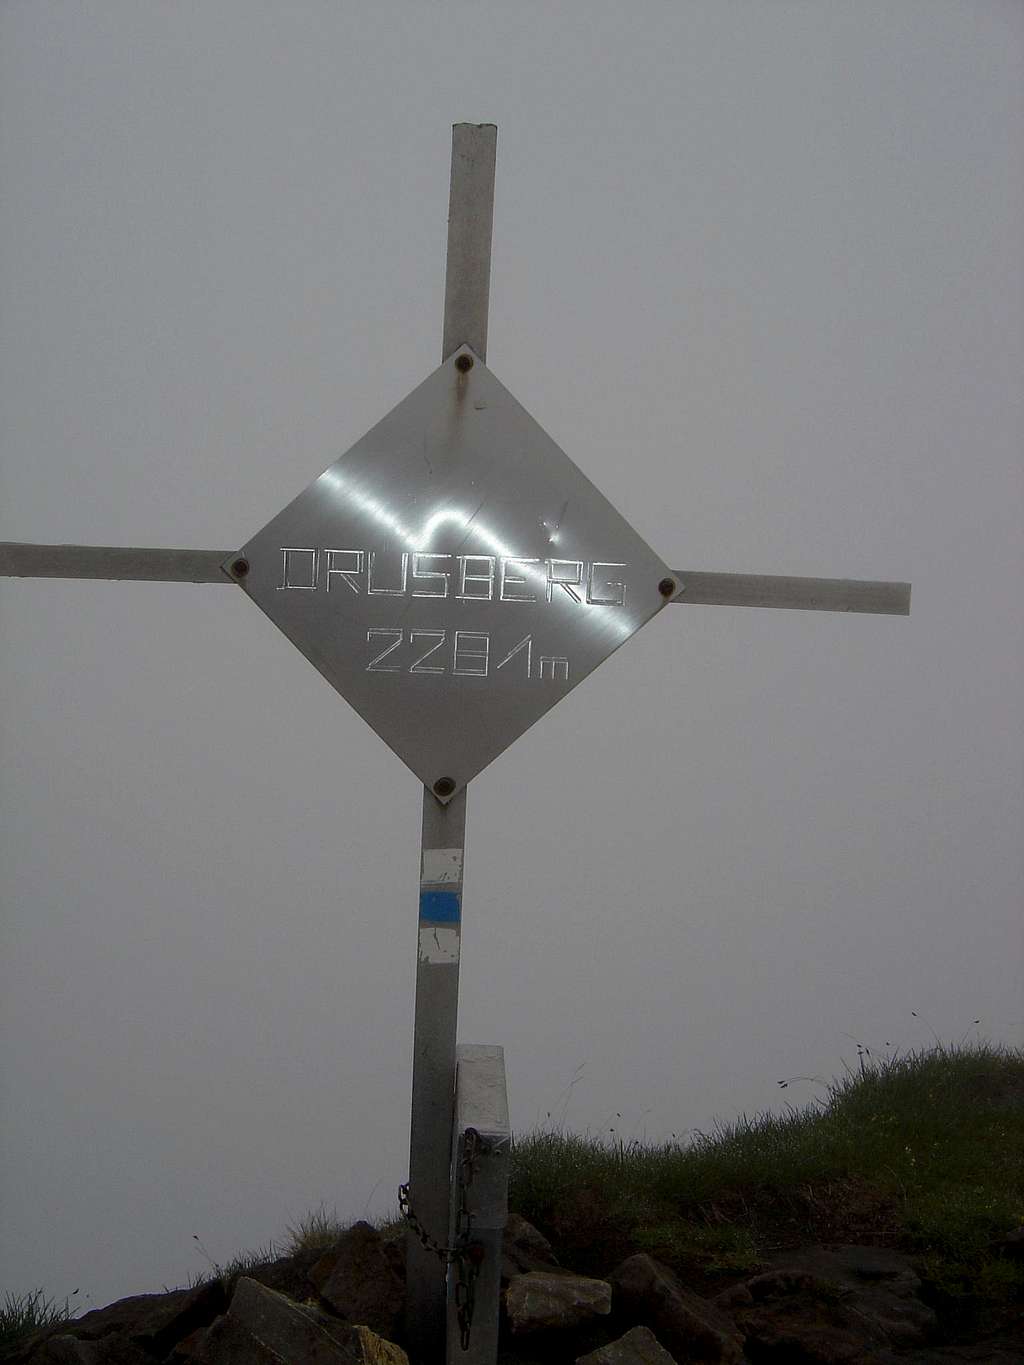 Summit cross Druesberg 2281m